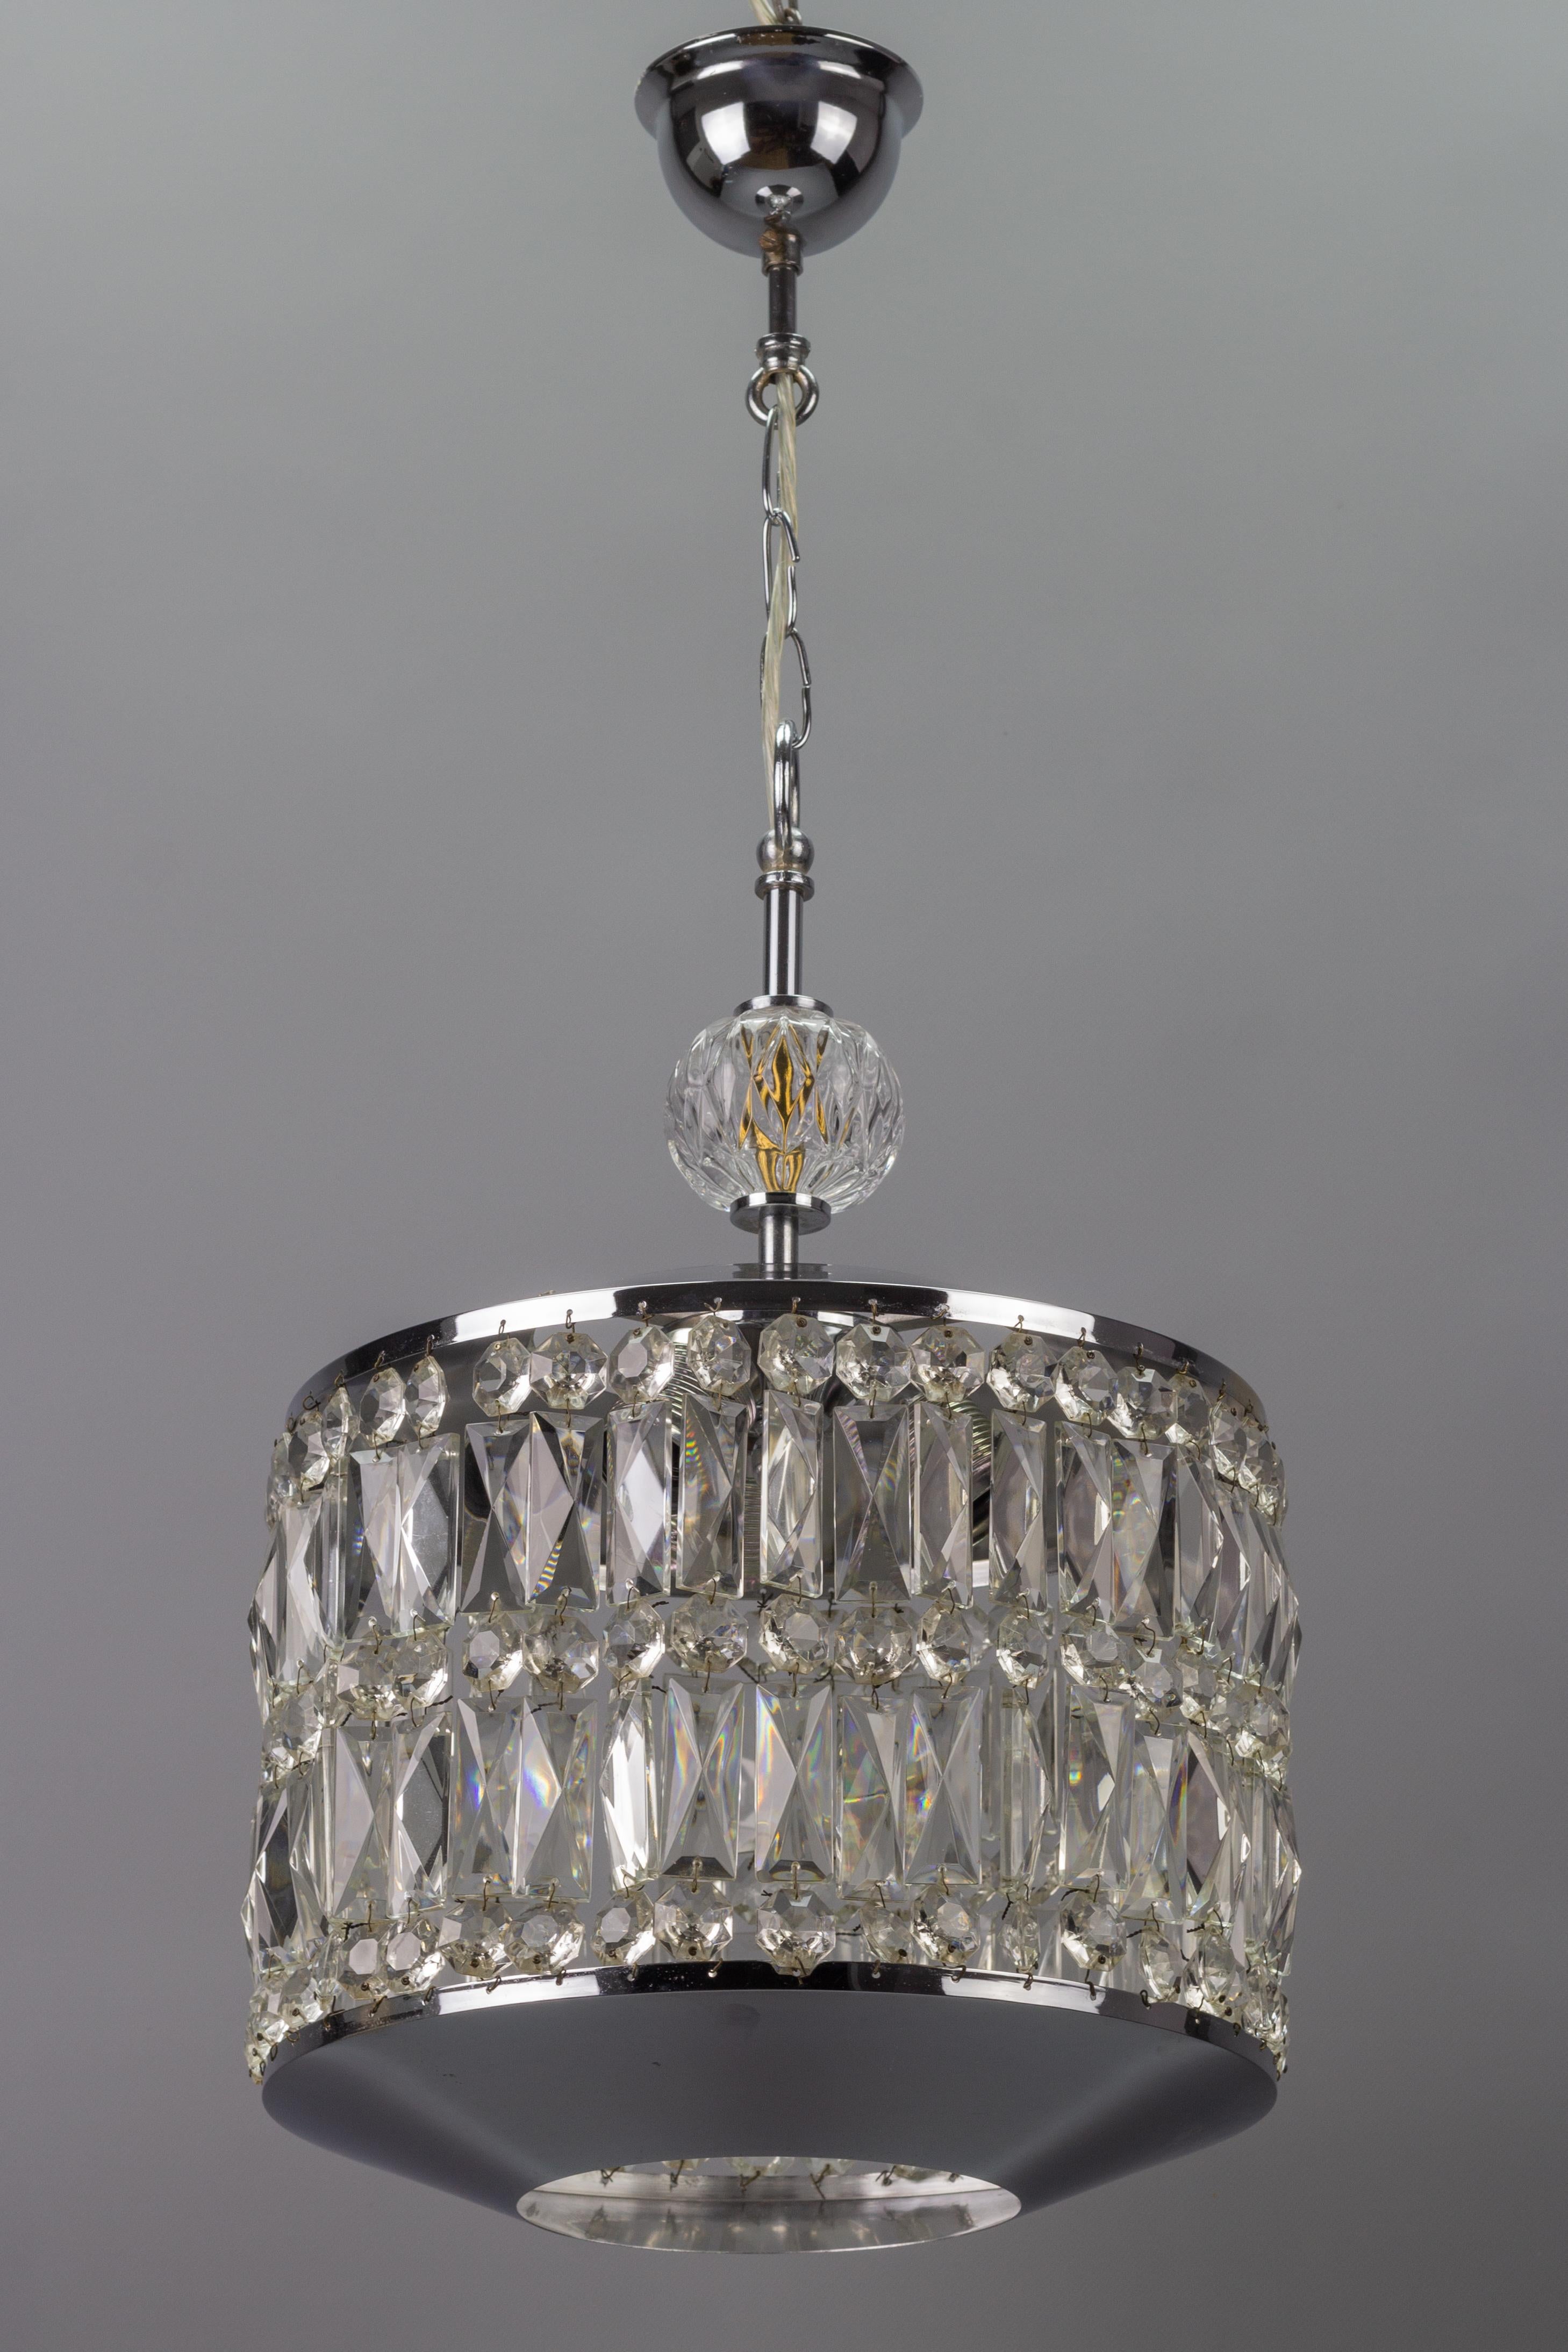 Beeindruckende Mid-Century Modern Pendelleuchte aus Kristallglas und Chrom mit drei Innenleuchten. 
Das Licht wird von den Prismen und Perlen aus Kristallglas wunderschön reflektiert und erzeugt Licht- und Schattenspiele.
Drei Fassungen für